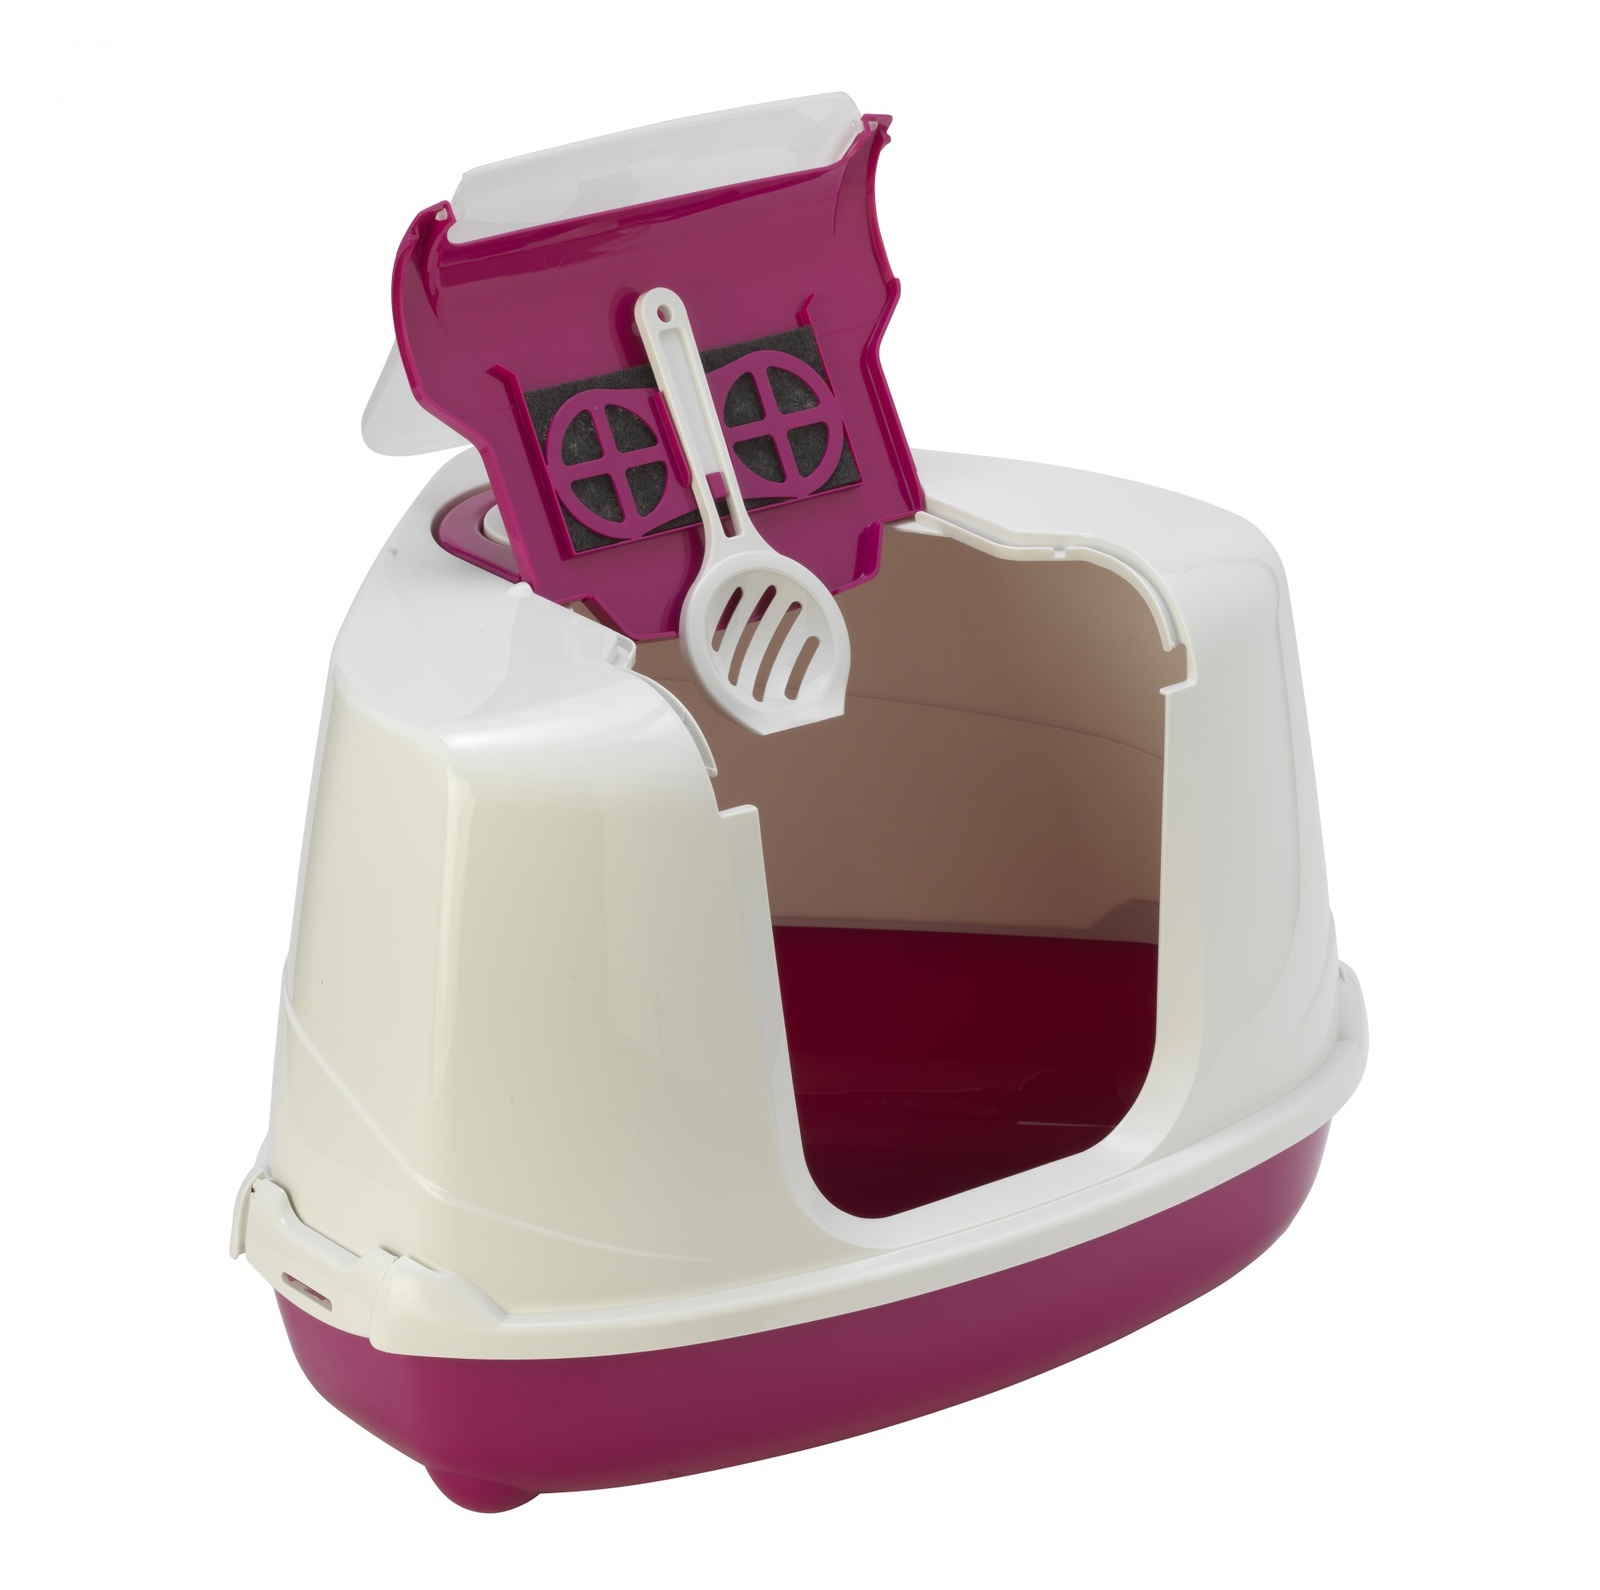 Туалет-домик угловой Flip с угольным фильтром, 55х45х38см, ярко-розовый (1,6 кг) Moderna Туалет-домик угловой Flip с угольным фильтром, 55х45х38см, ярко-розовый (1,6 кг) - фото 1